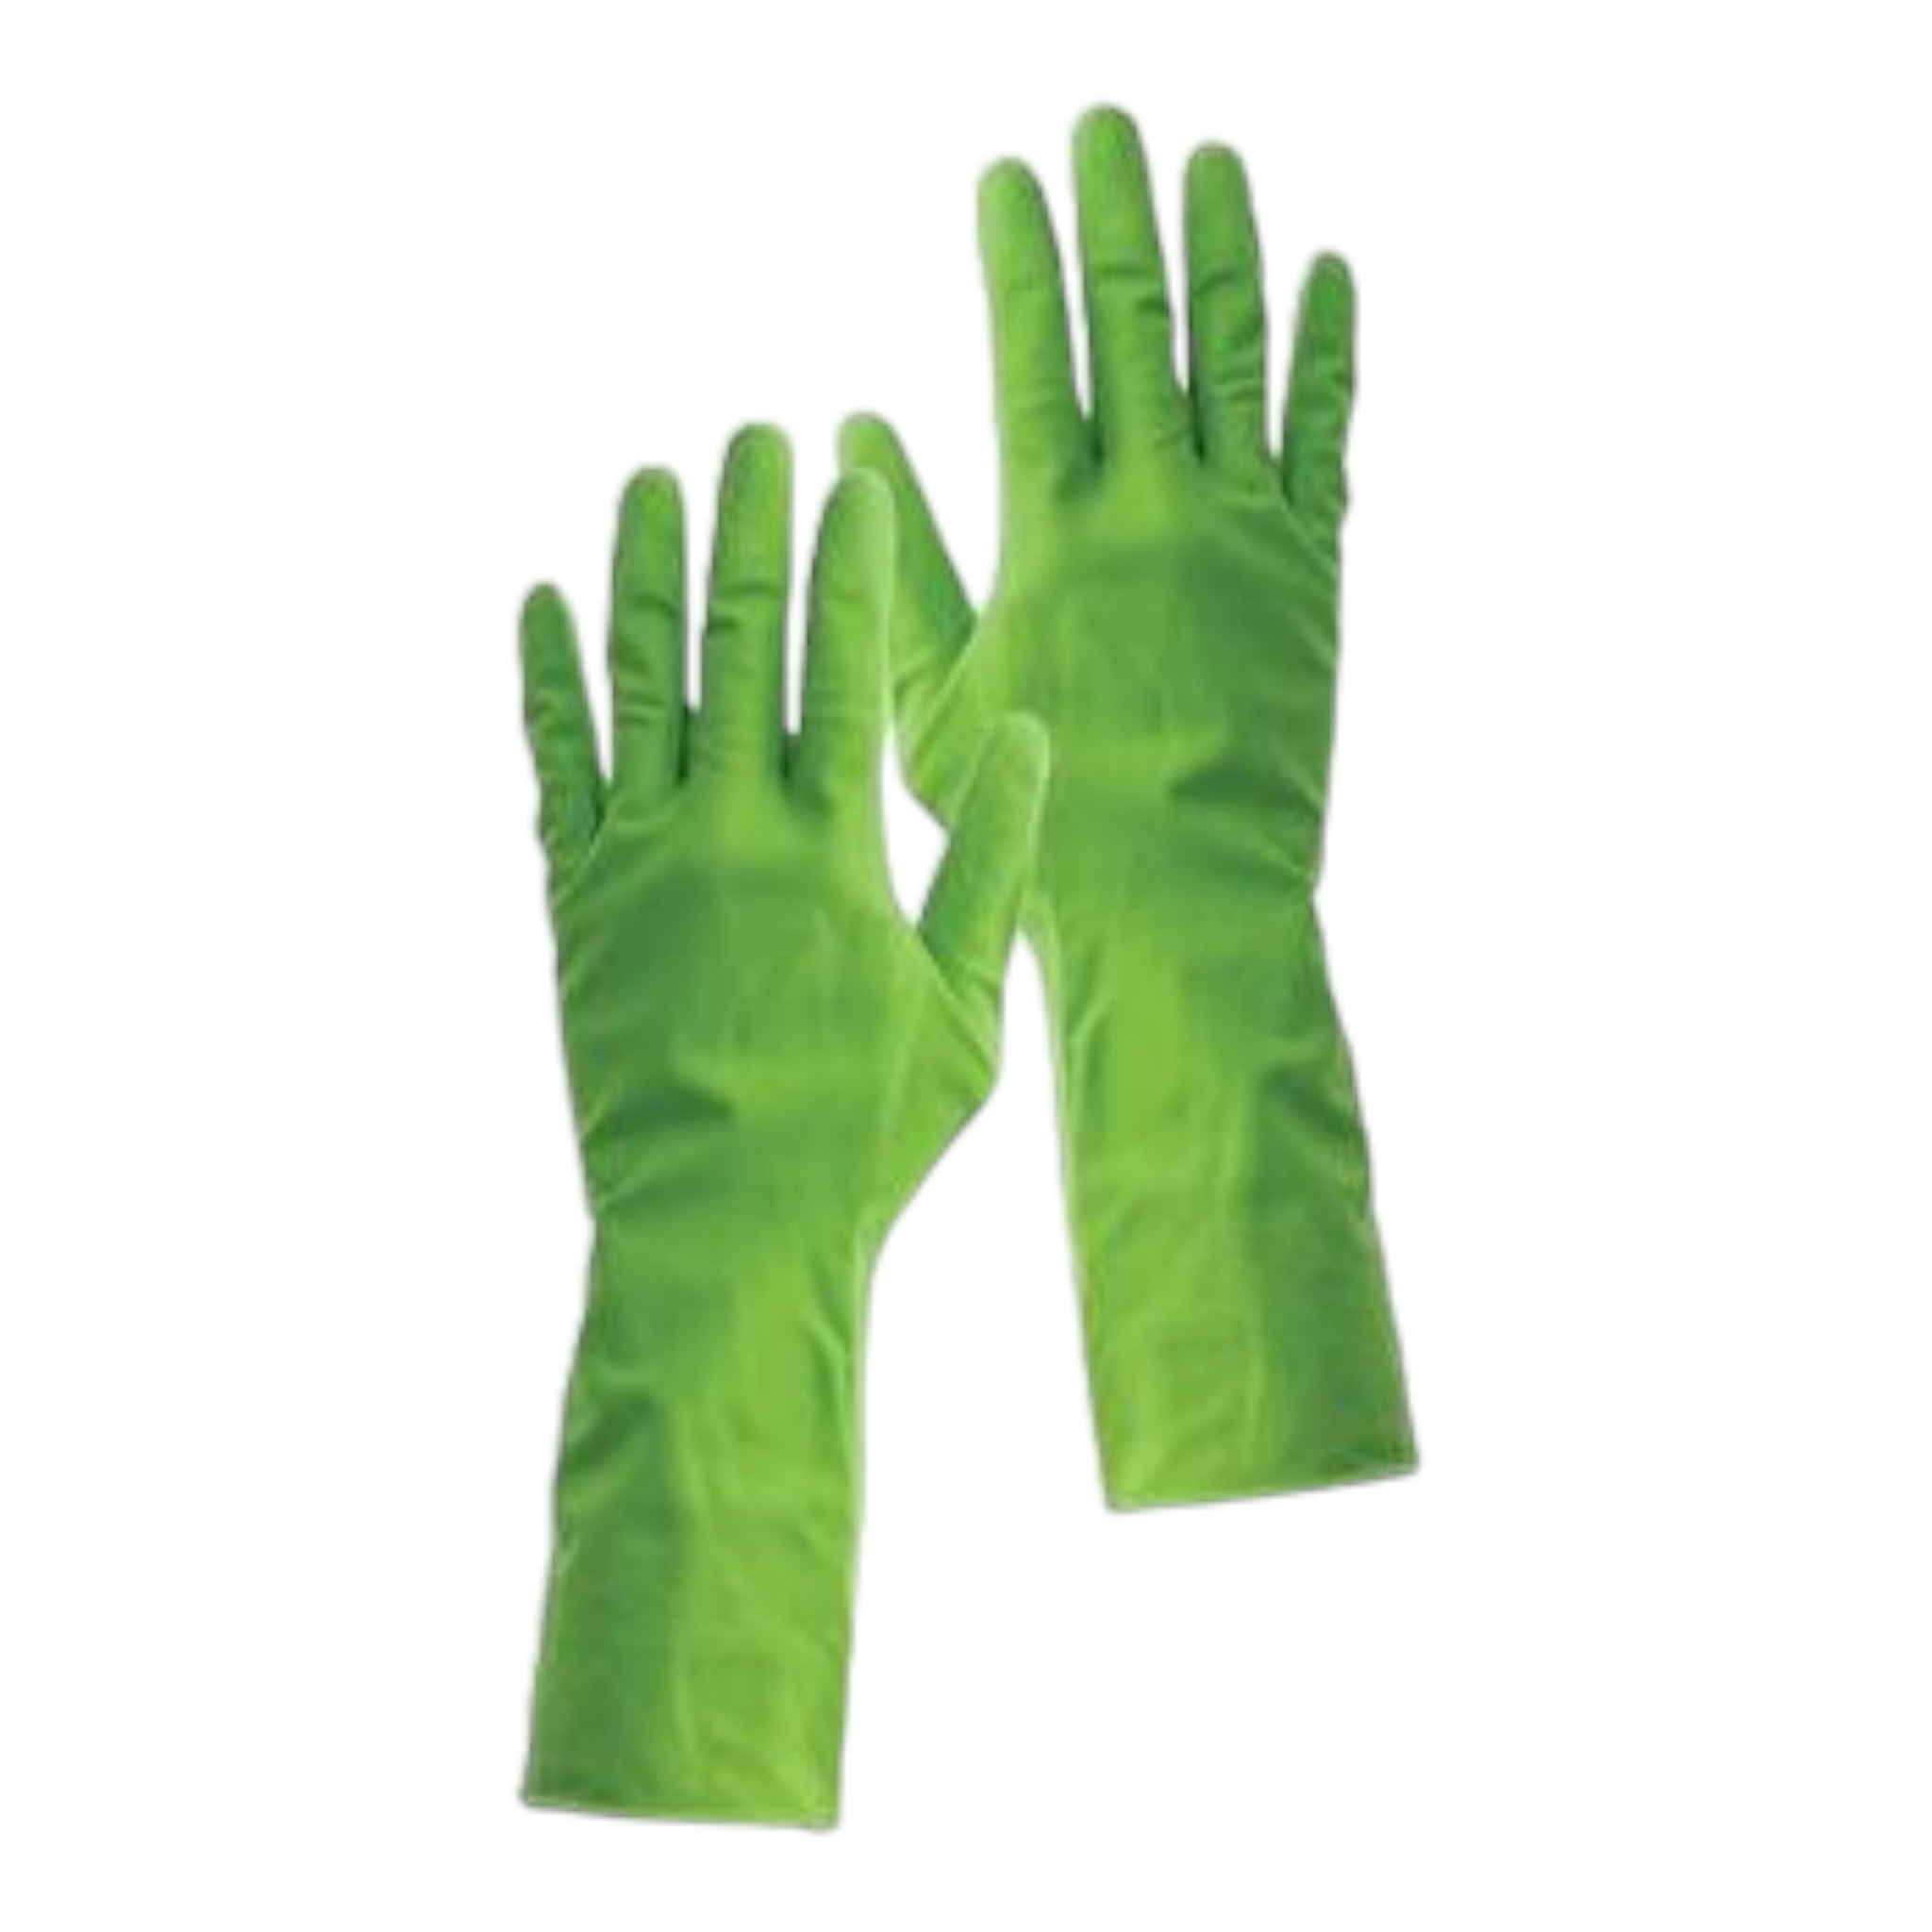 Household Rubber Gloves Pair